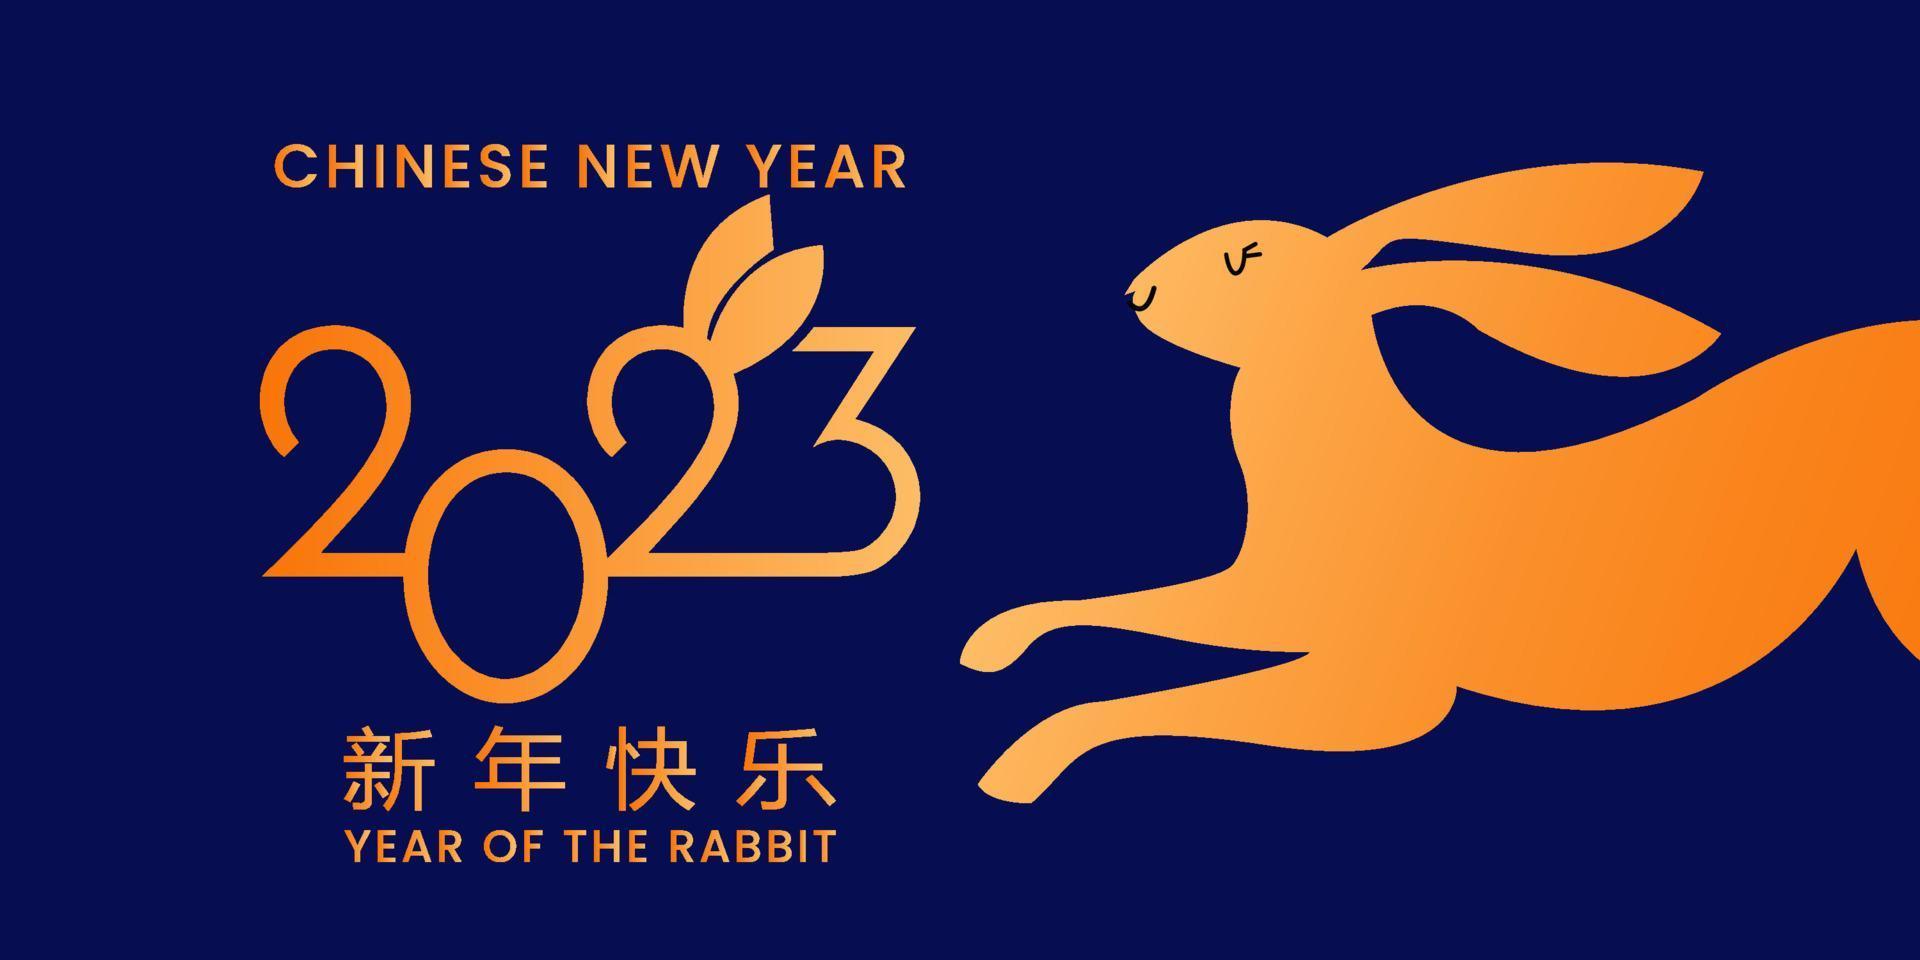 ano novo chinês 2023 ano do coelho - símbolo do zodíaco chinês, conceito de ano novo lunar, design de fundo moderno azul e dourado vetor